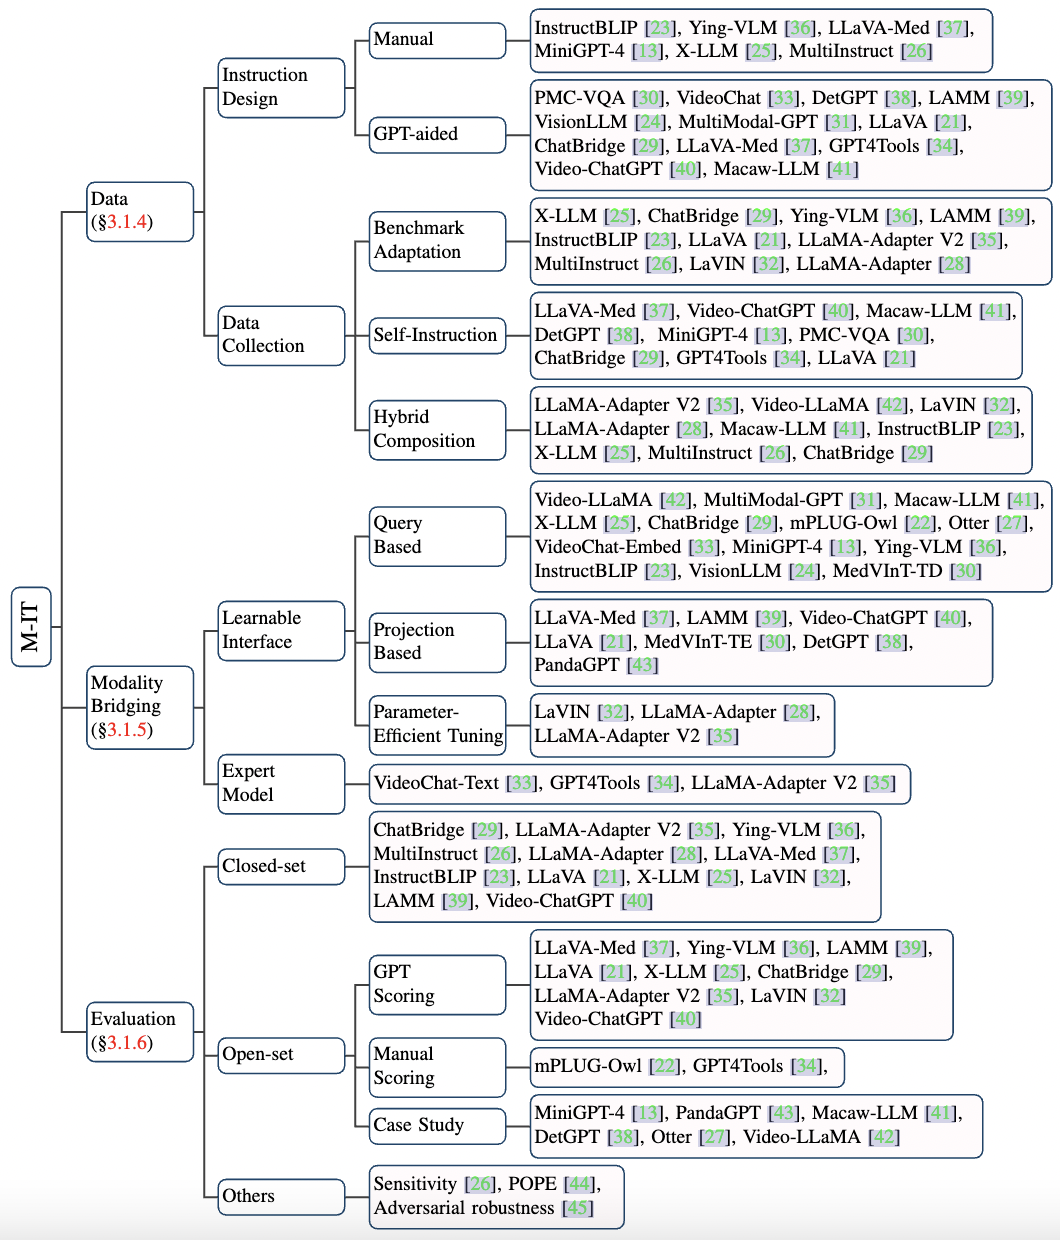 图2 多模态指令调优（M-IT）的分类法，包括数据构建、模态桥接和评估